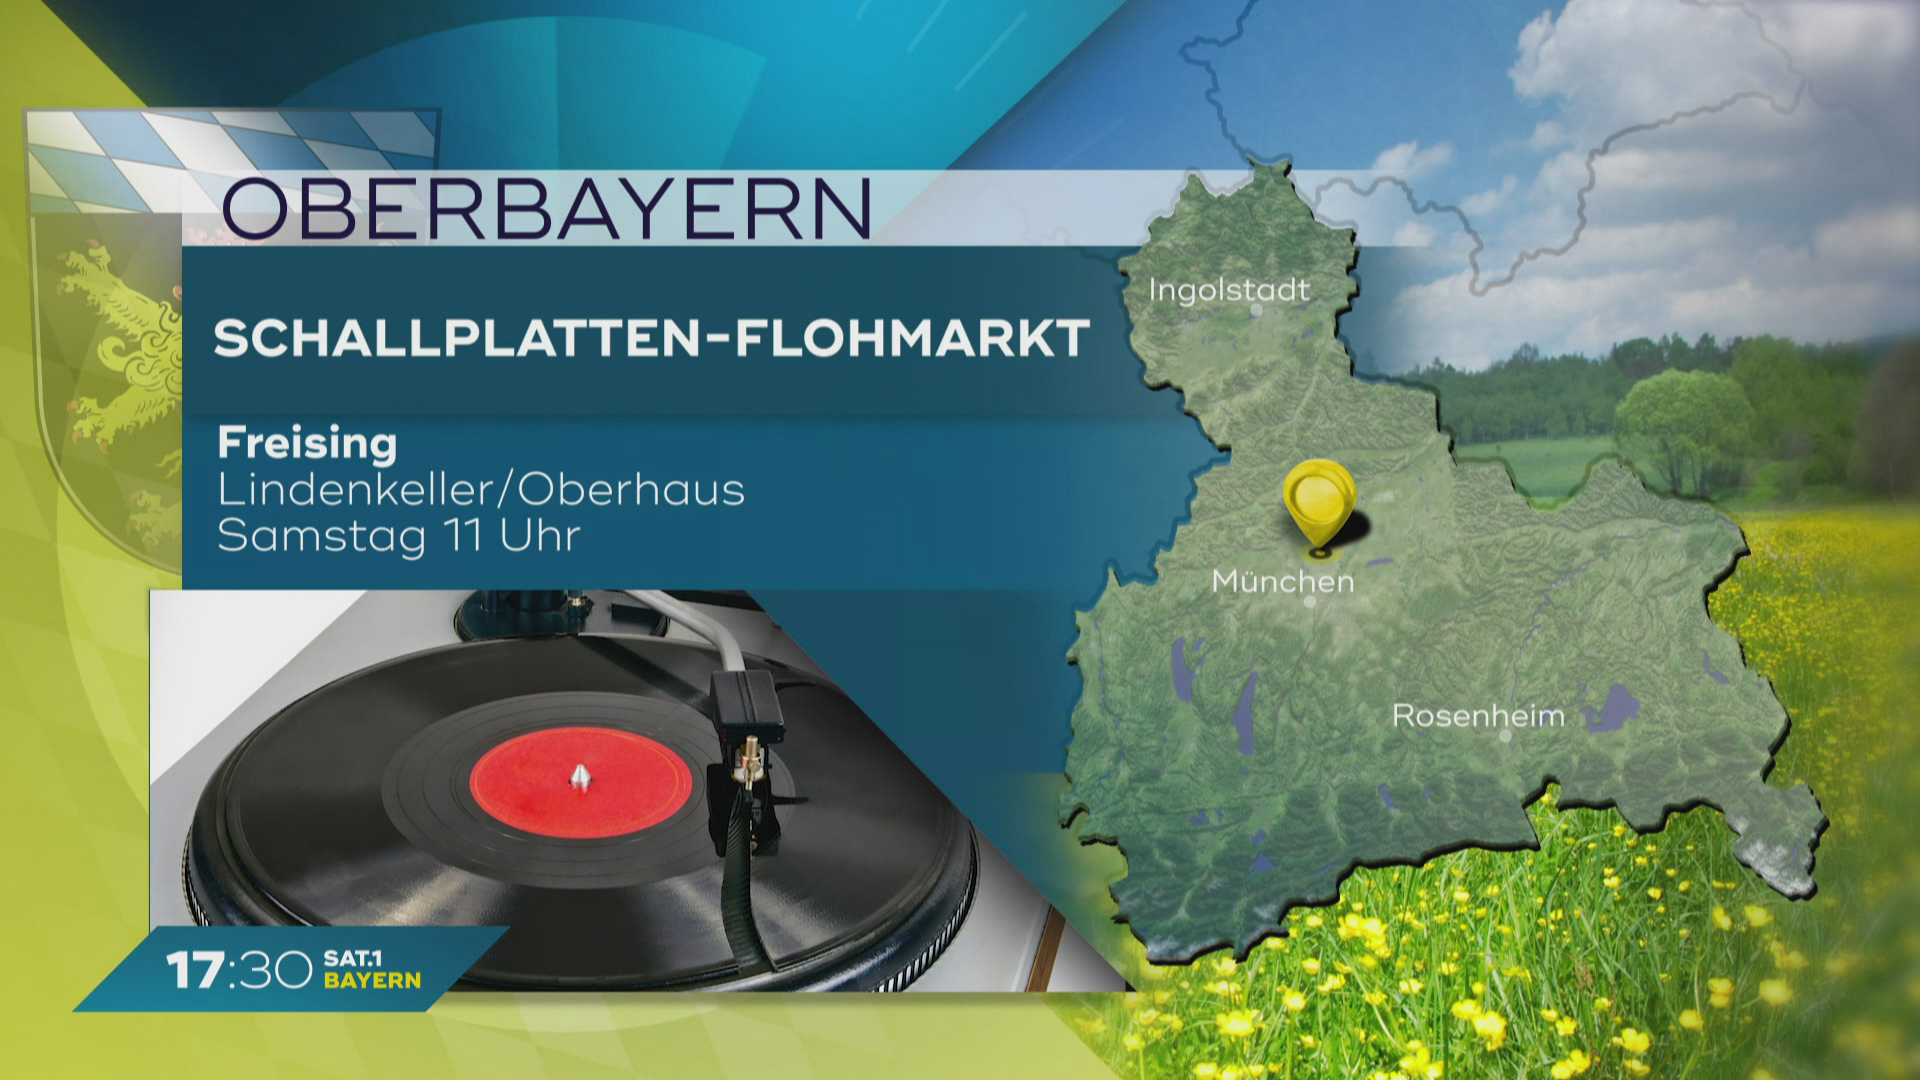 Mein Bayern erleben: Frühlingsfest und Schallplatten-Flohmarkt